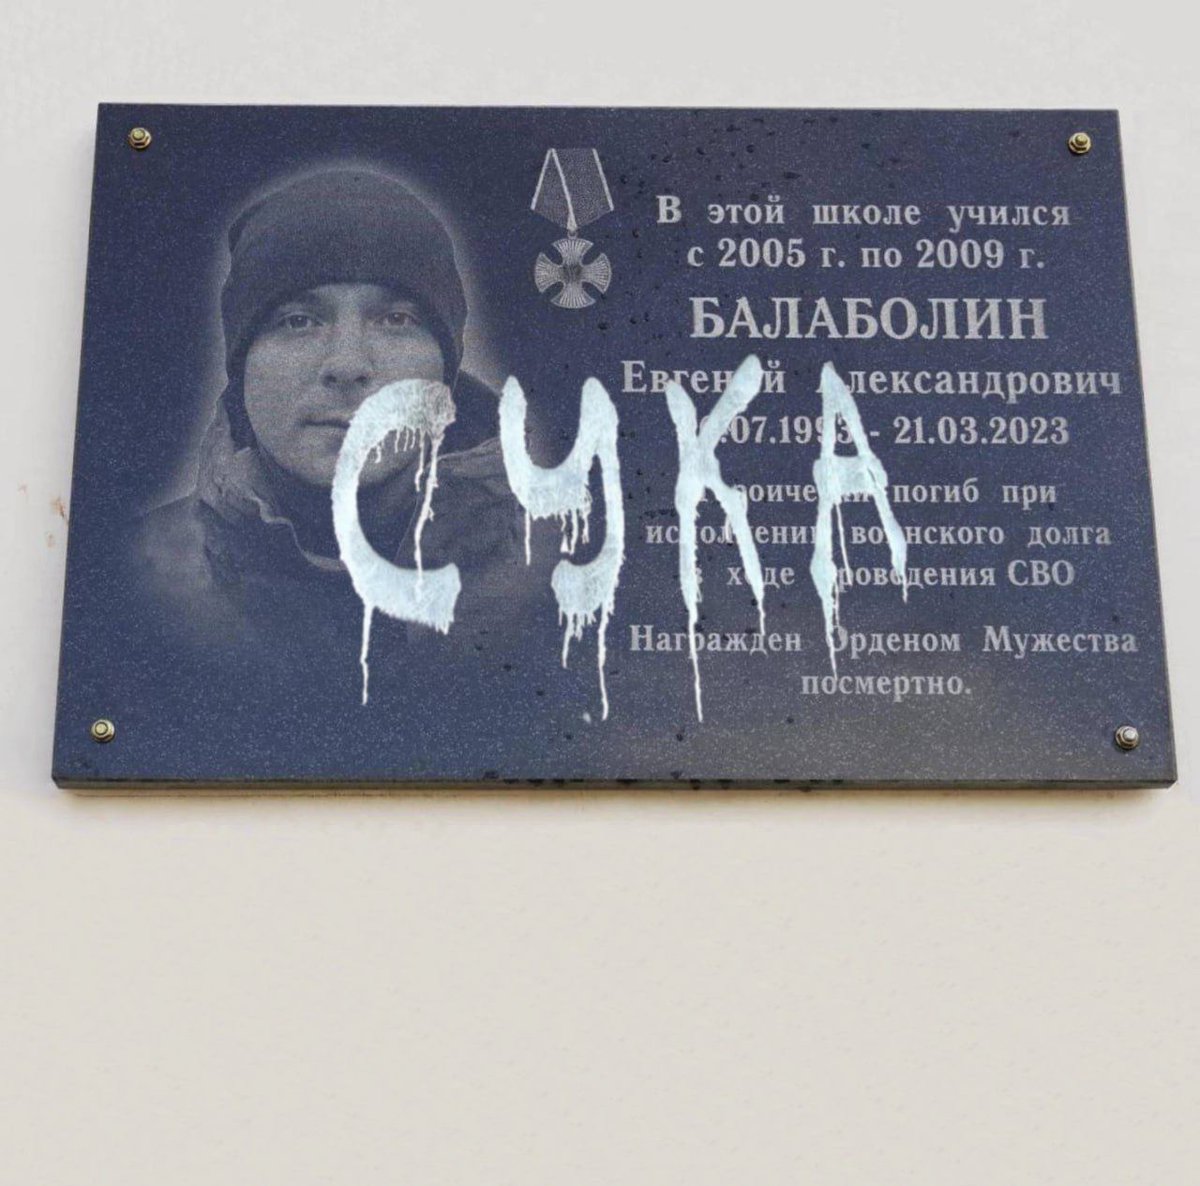 Gli 'eroi' dell'operazione speciale secondo la visione di alcuni residenti  di Kursk.
Questo si accoda ad altri casi del genere. Potrà solo peggiorare.
#StopRussia #StopPutin #Путінхуйло #Kursk